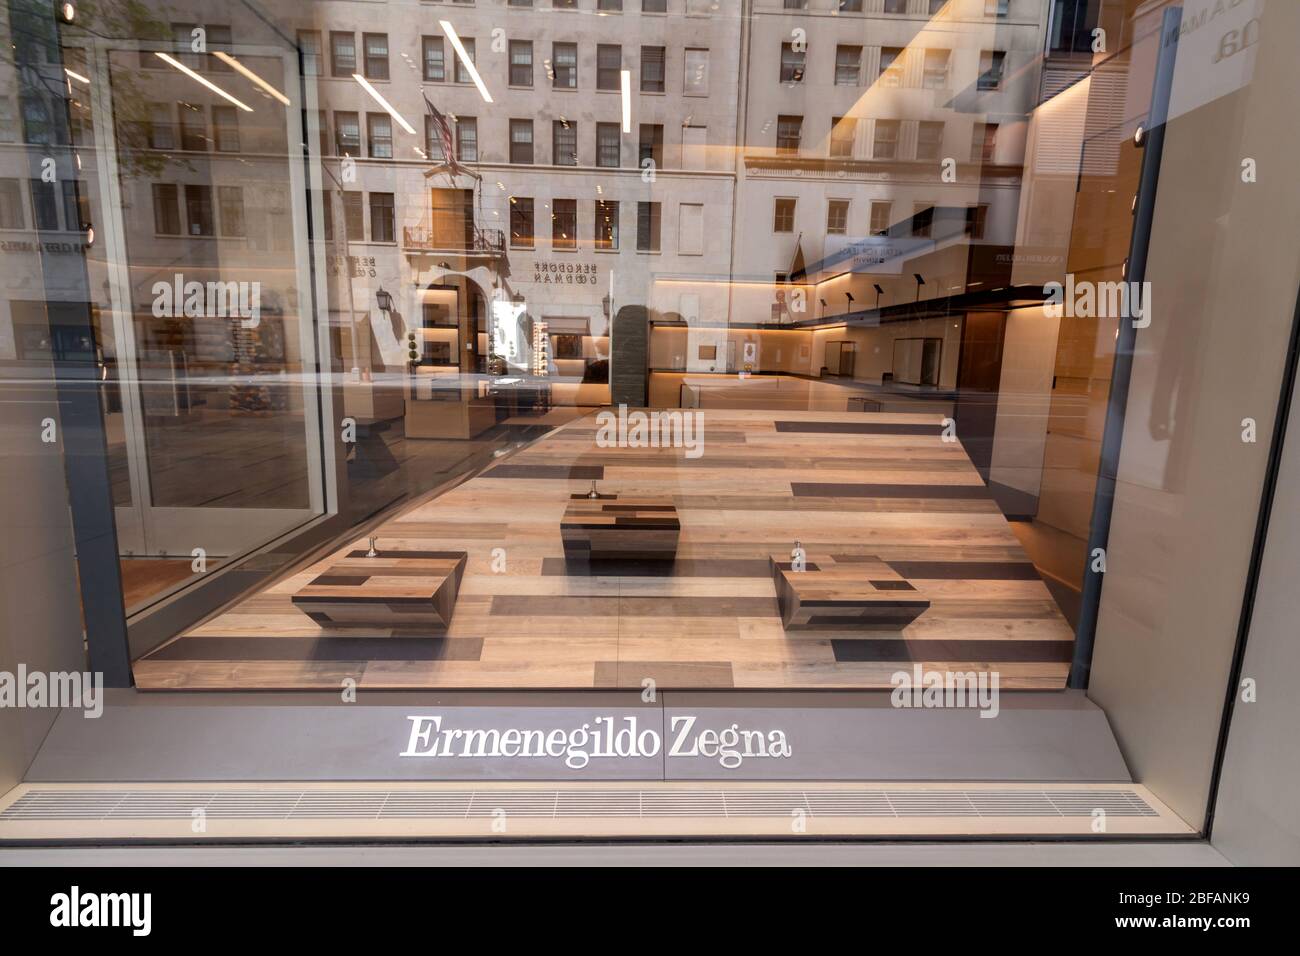 Leere Regale im Schaufenster des Ermenegildo Zegna-Stores auf der 57. Straße, wegen Coronavirus oder Covid-19-Pandemie geschlossen Stockfoto